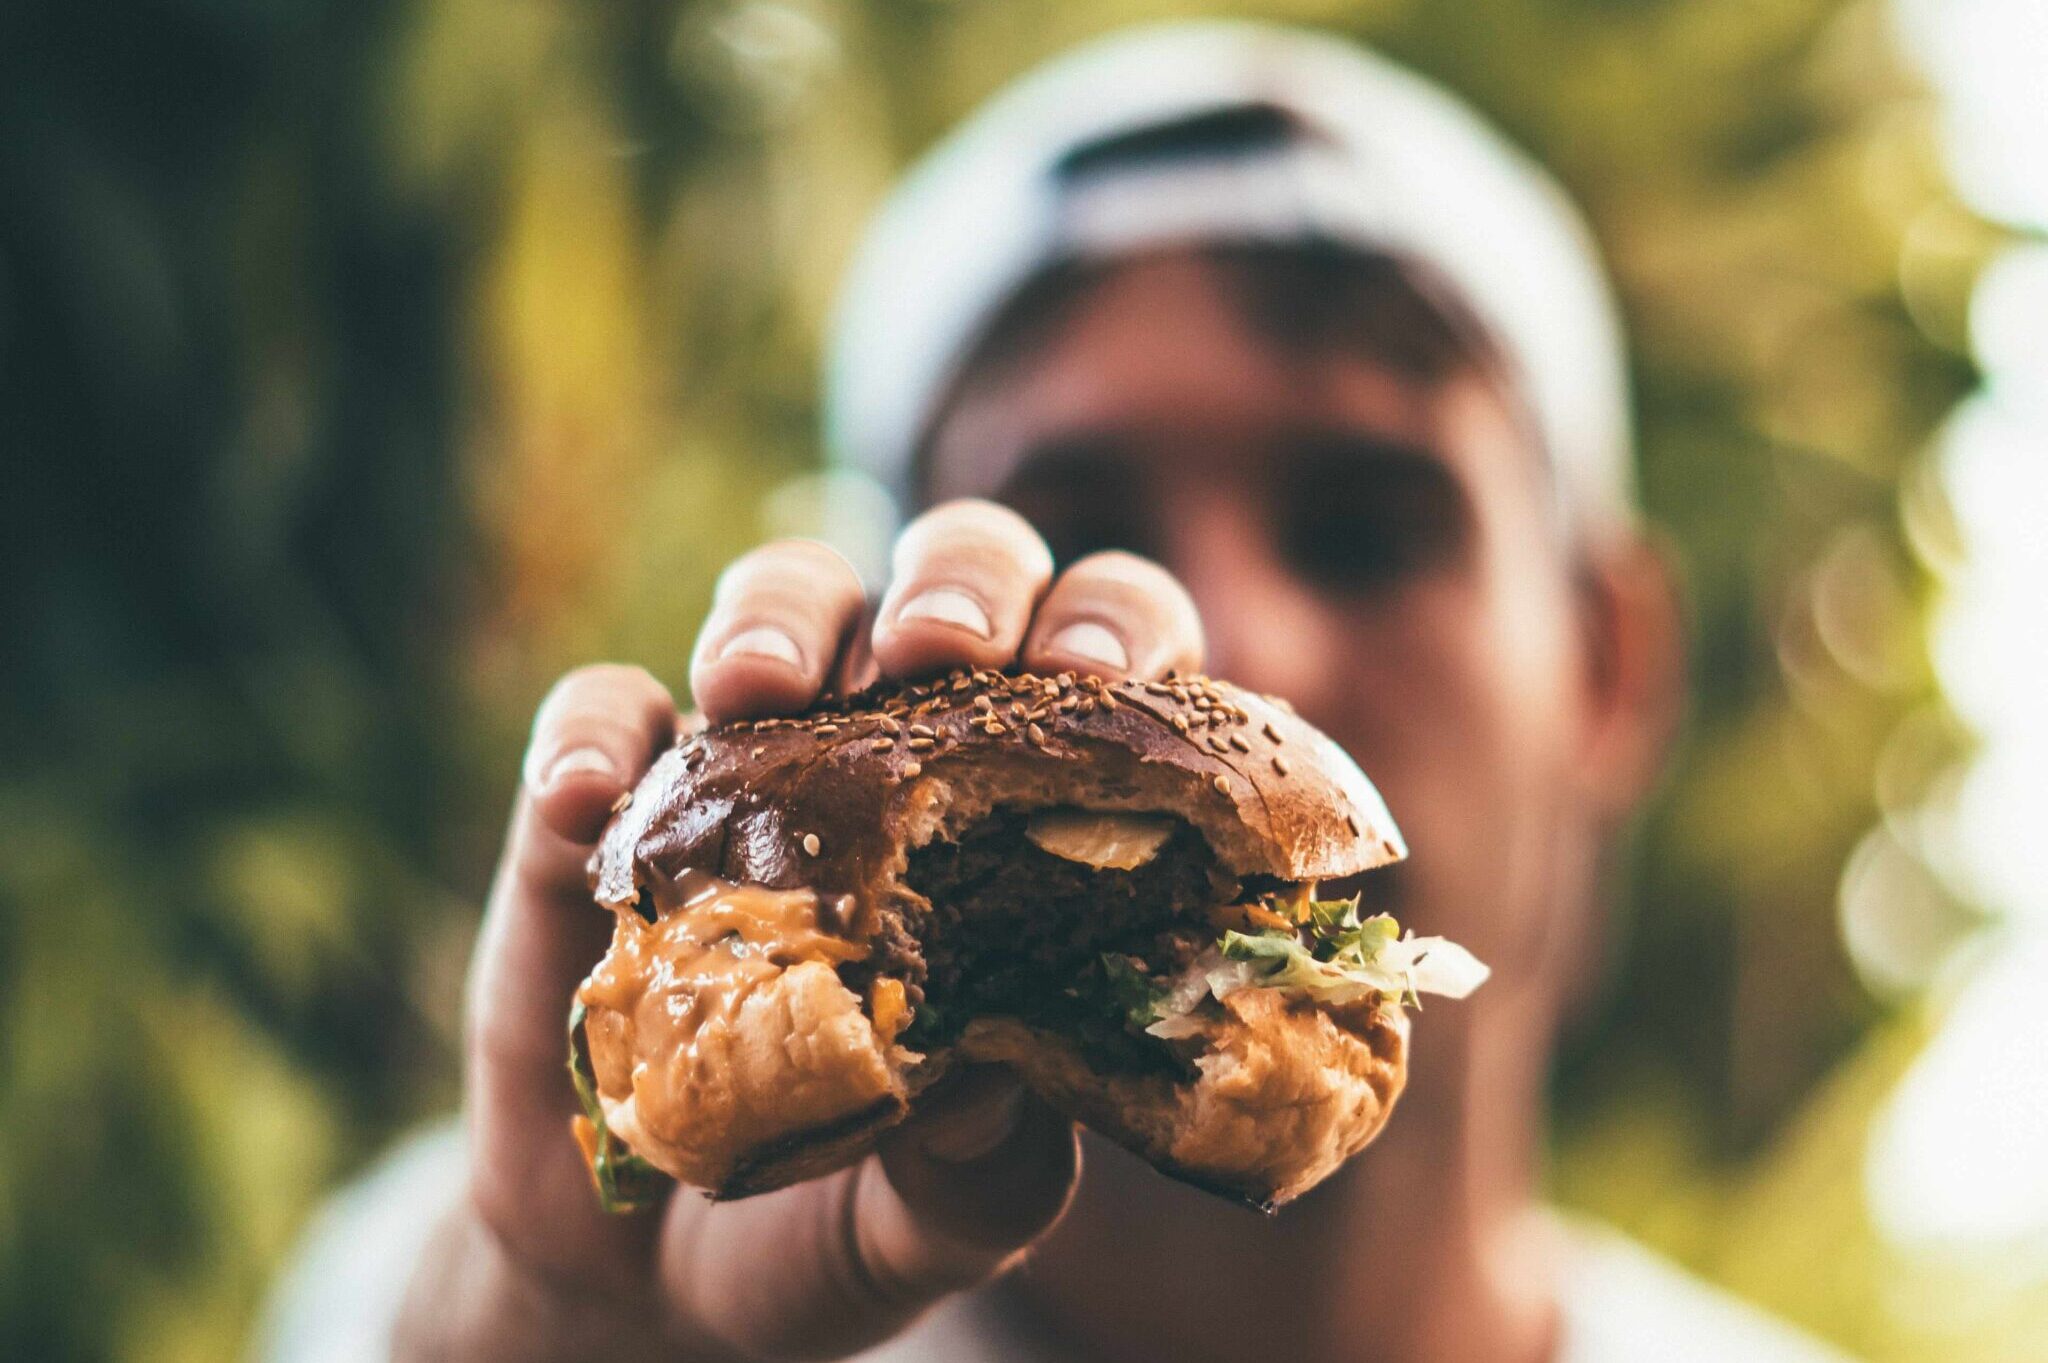 La hamburguesa que comerás el fin de semana influye en la deforestación del planeta